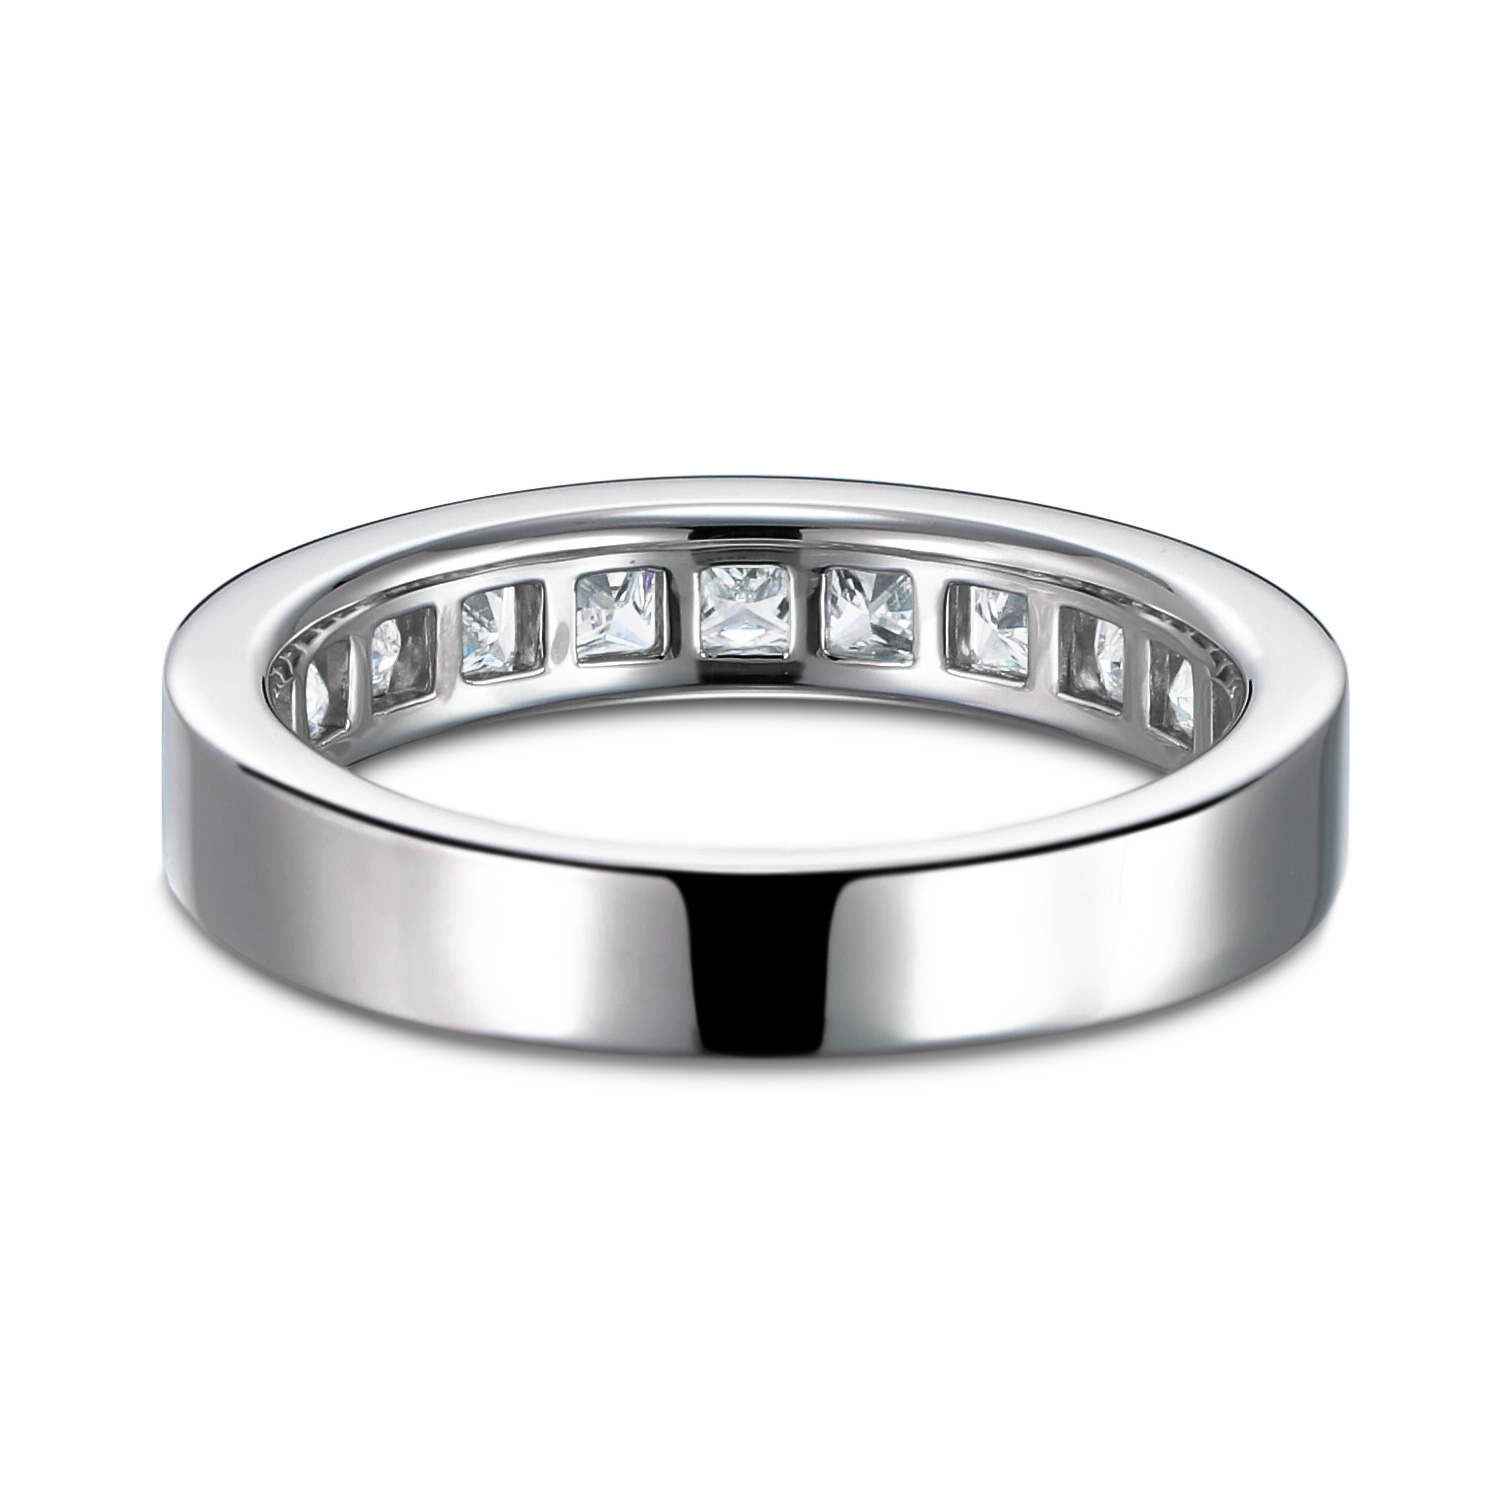 豪華な結婚指輪として 0 97カラット 2 5ミリのプリンセスカットを使ったエタニティリングです オーダーメイド通販 山梨 甲府のジュエリーブランドizuru